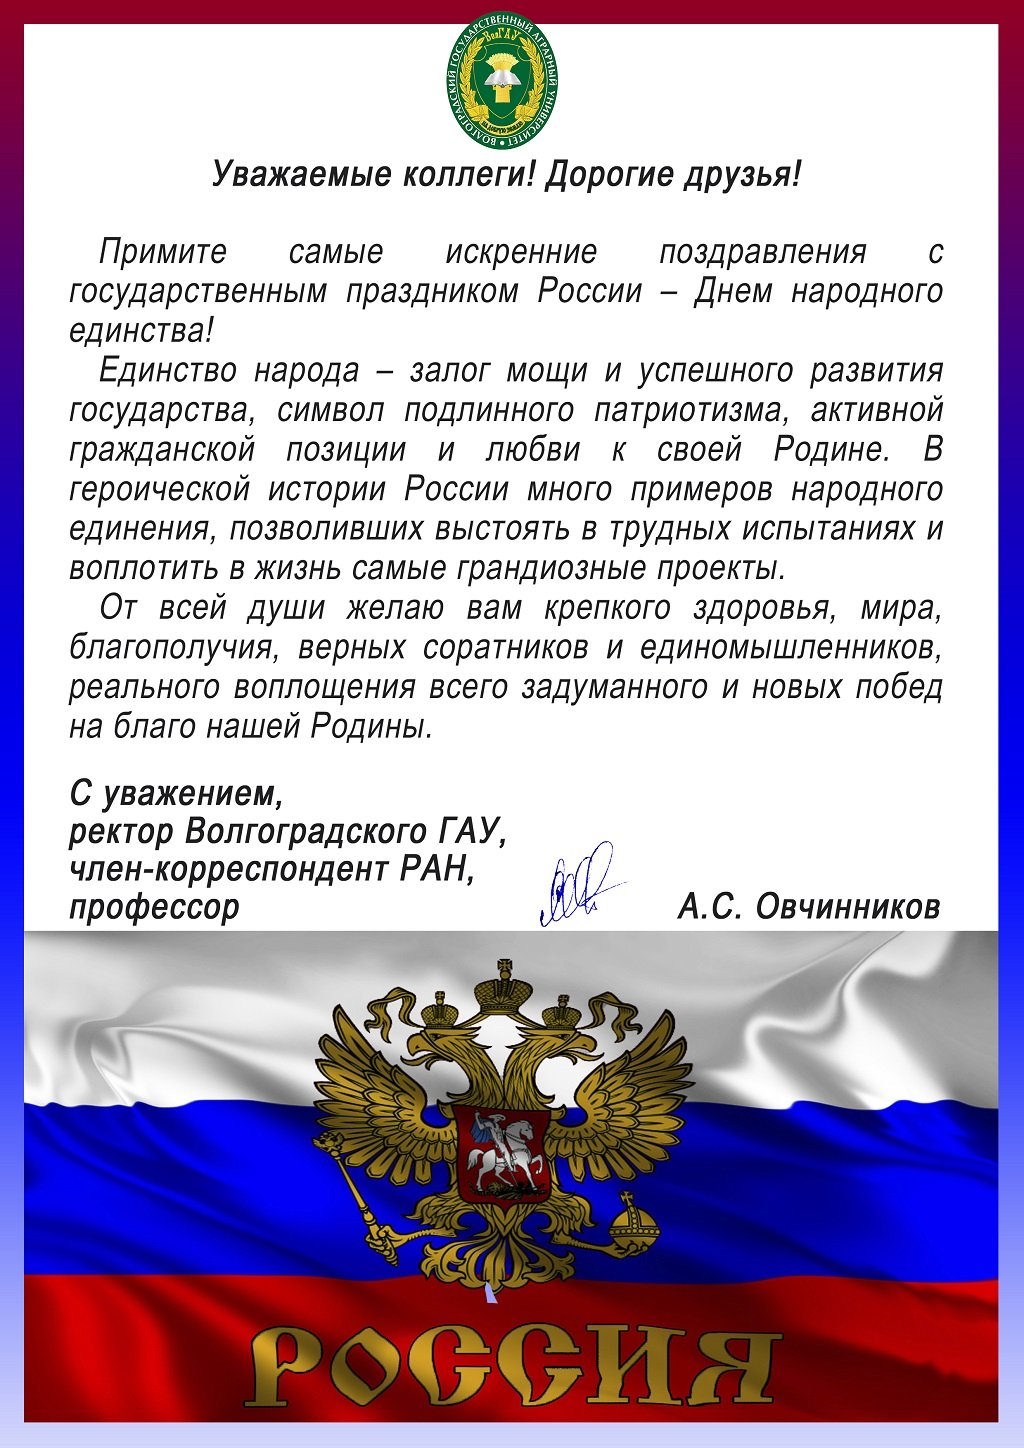 Поздравление с днем россии официальное. Поздравления с дем Росси. Плздравление с днем Росси. Поздравления с днём Росс. Поздравление с дне России.